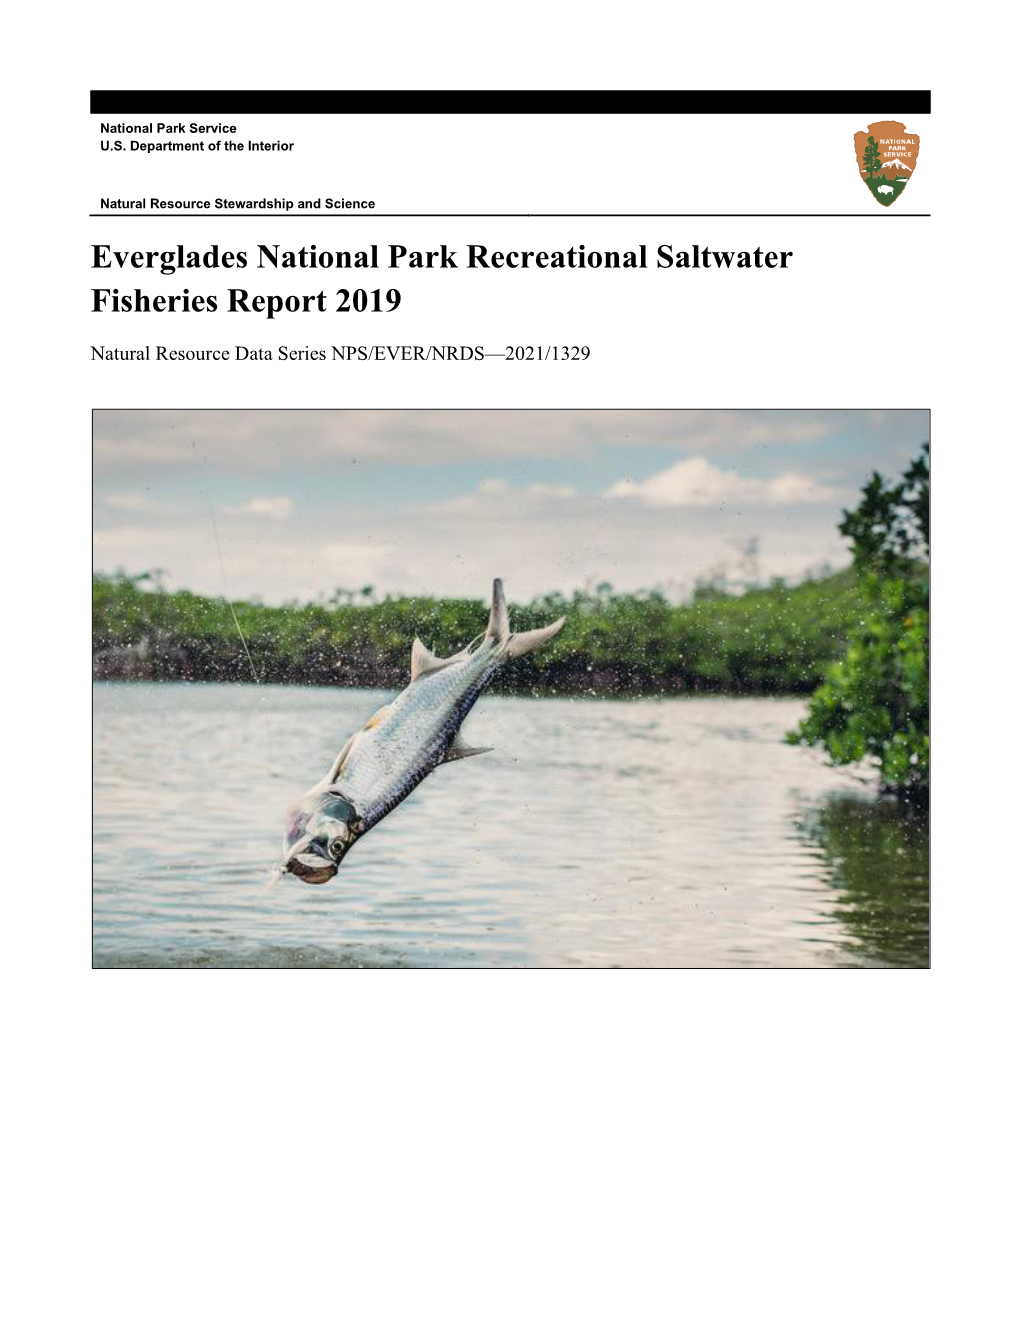 Recreational Saltwater Fisheries Report 2019